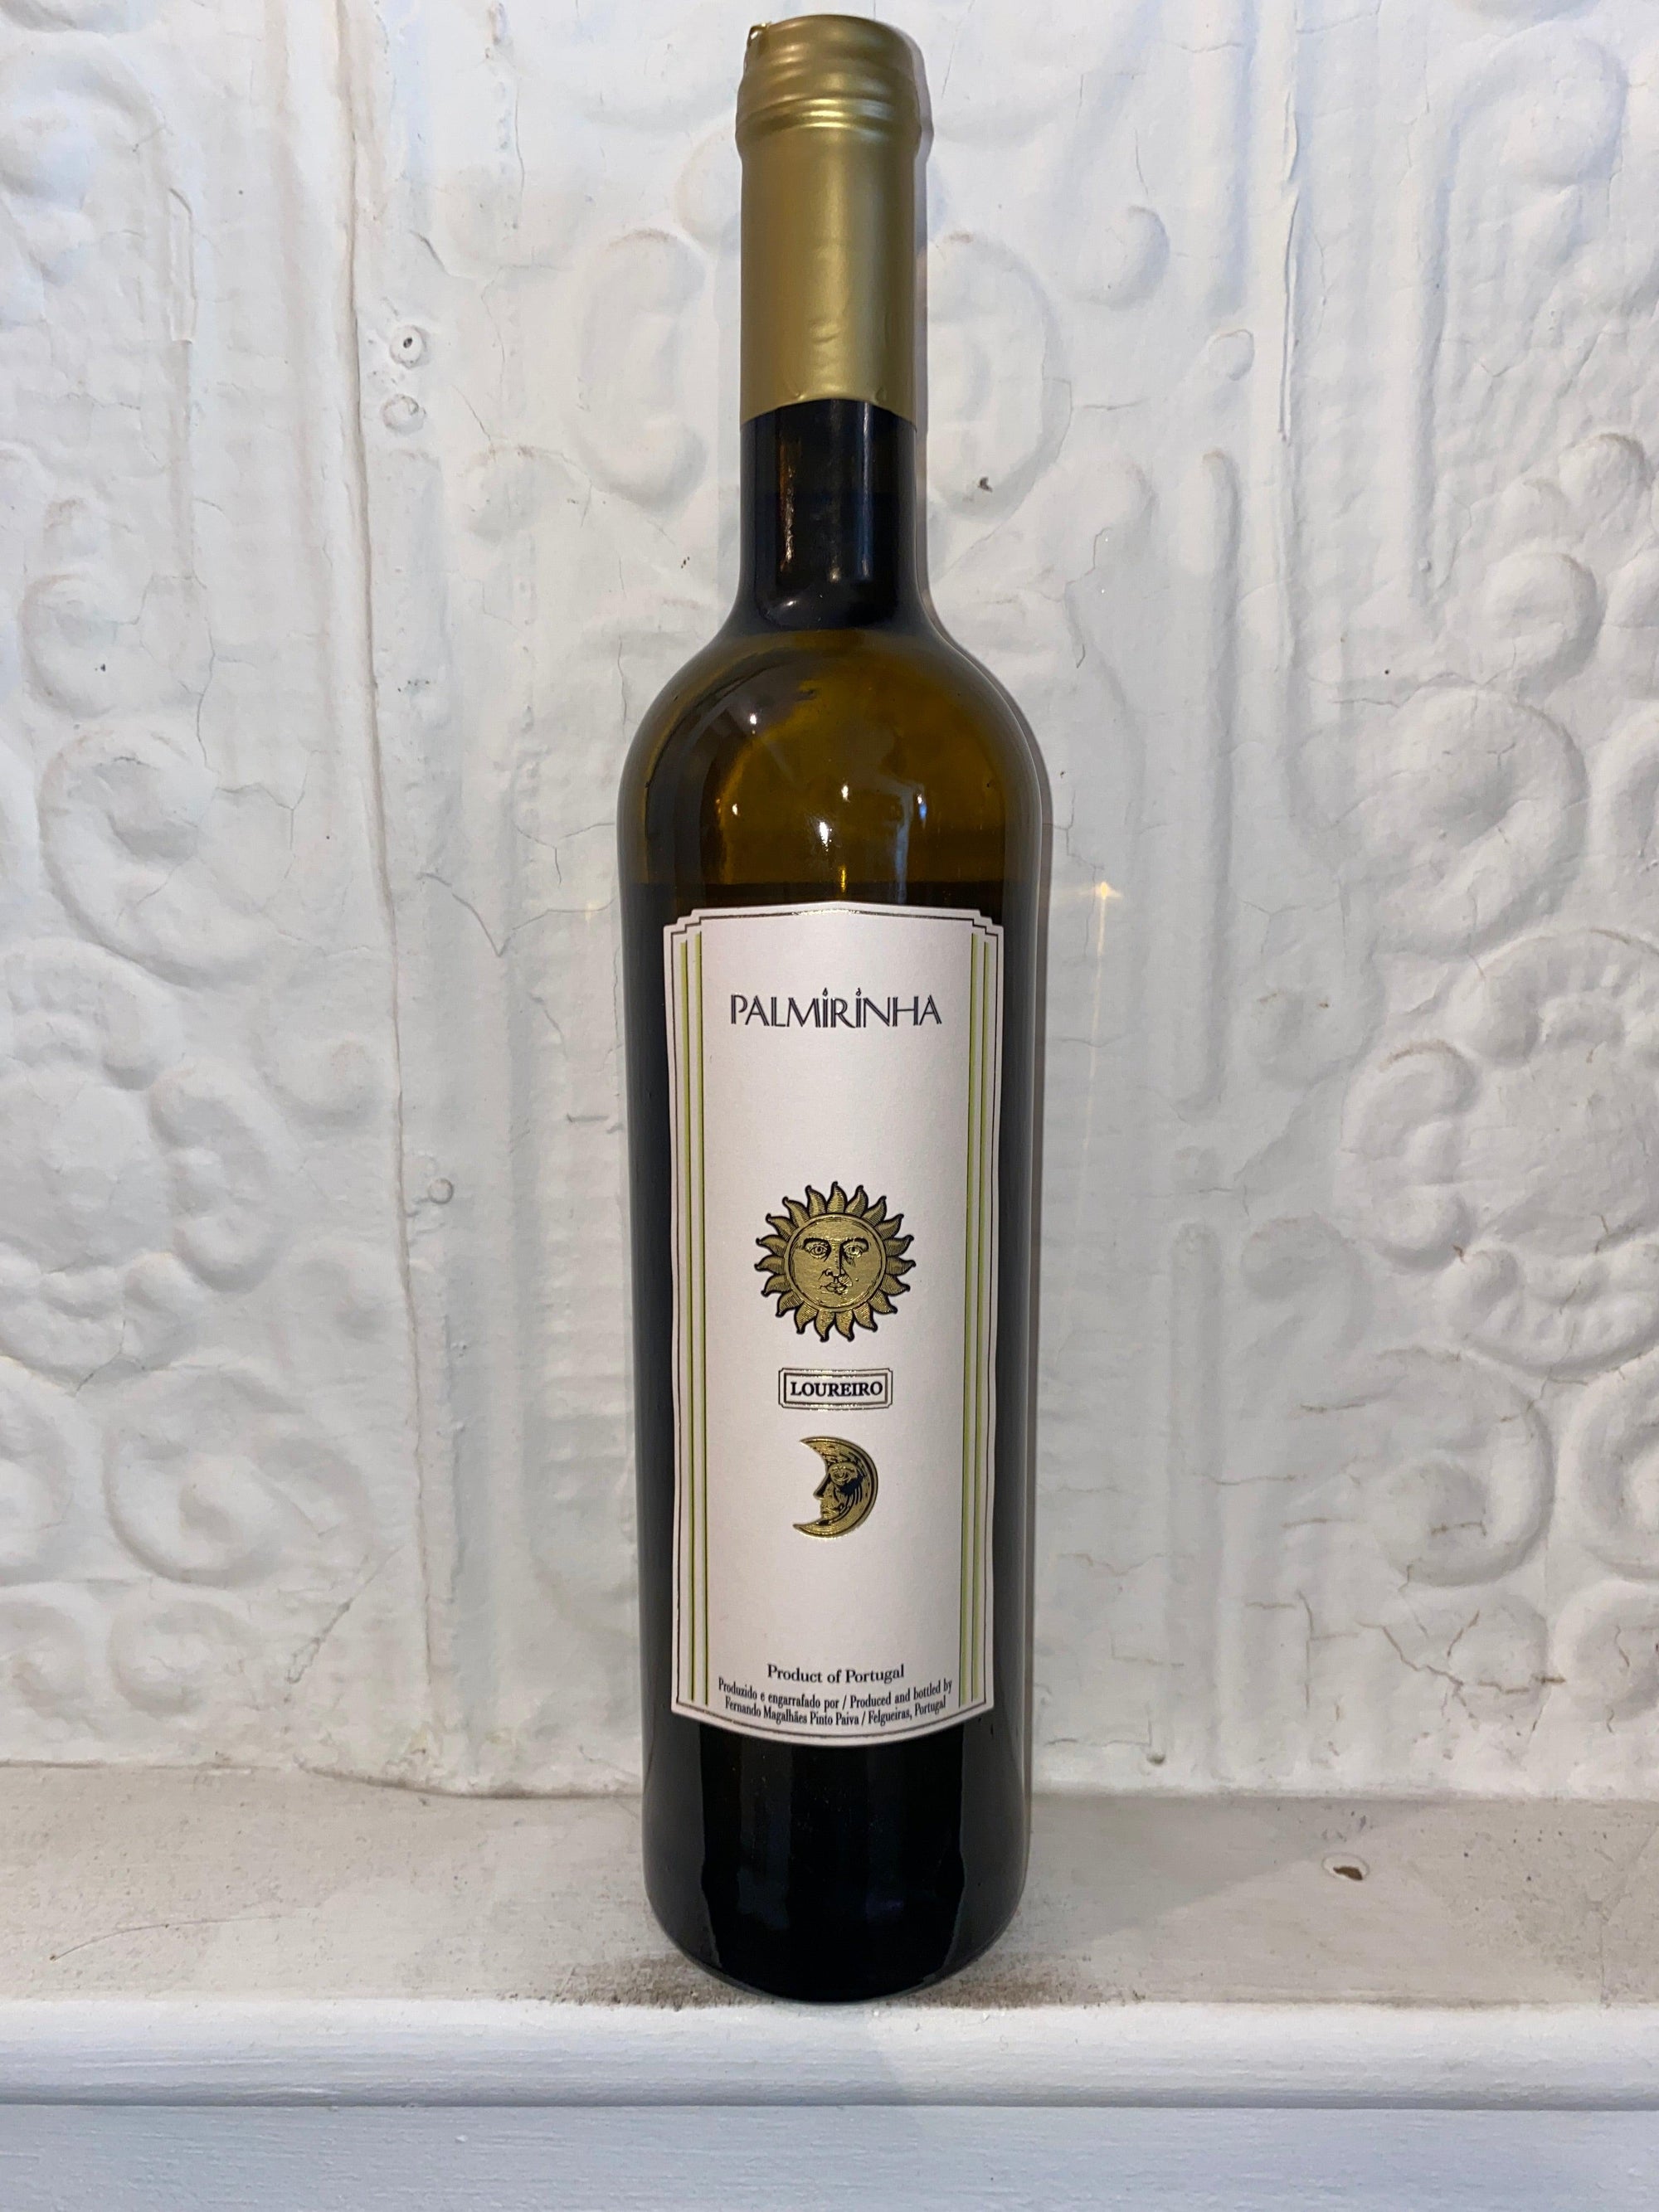 Loureiro, Palmirinha 2021 (Vinho Verde, Portugal)-Wine-Bibber & Bell